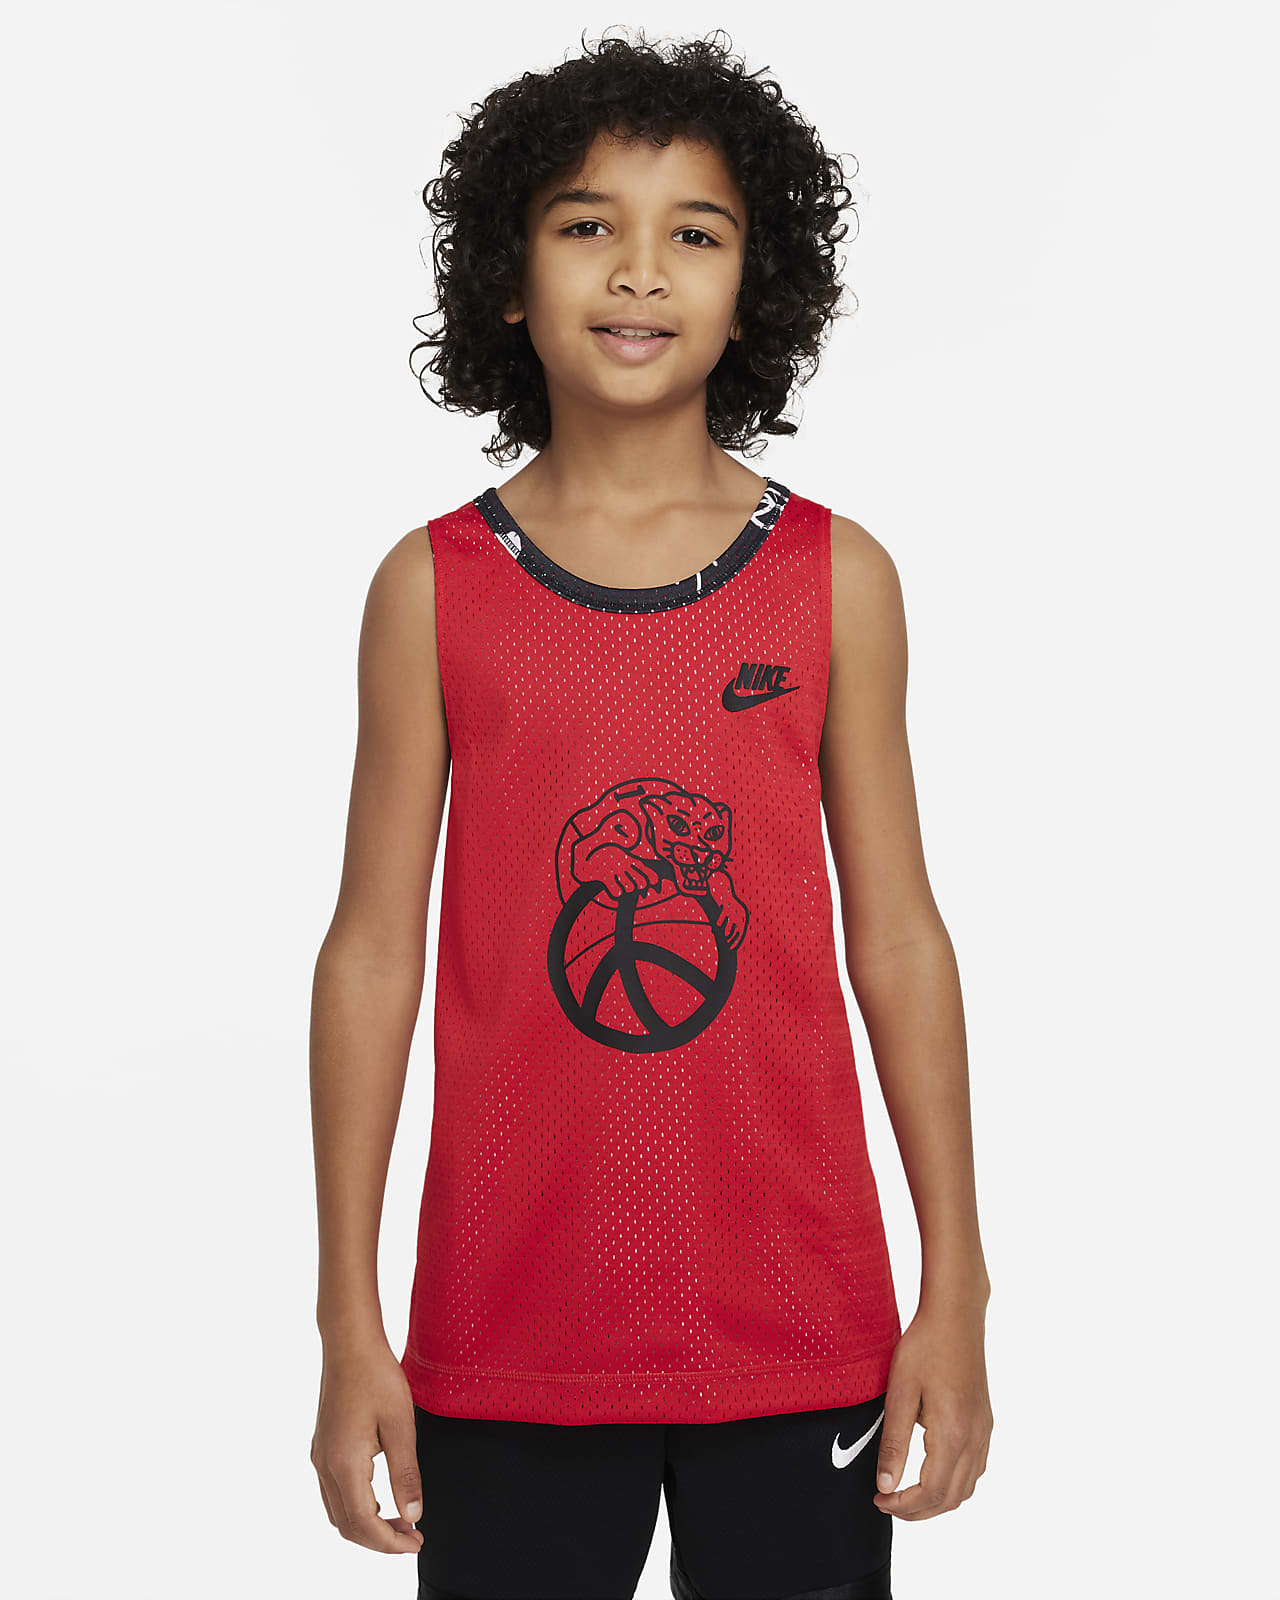 Vendbar Nike Culture of Basketball-trøje til større børn (drenge)